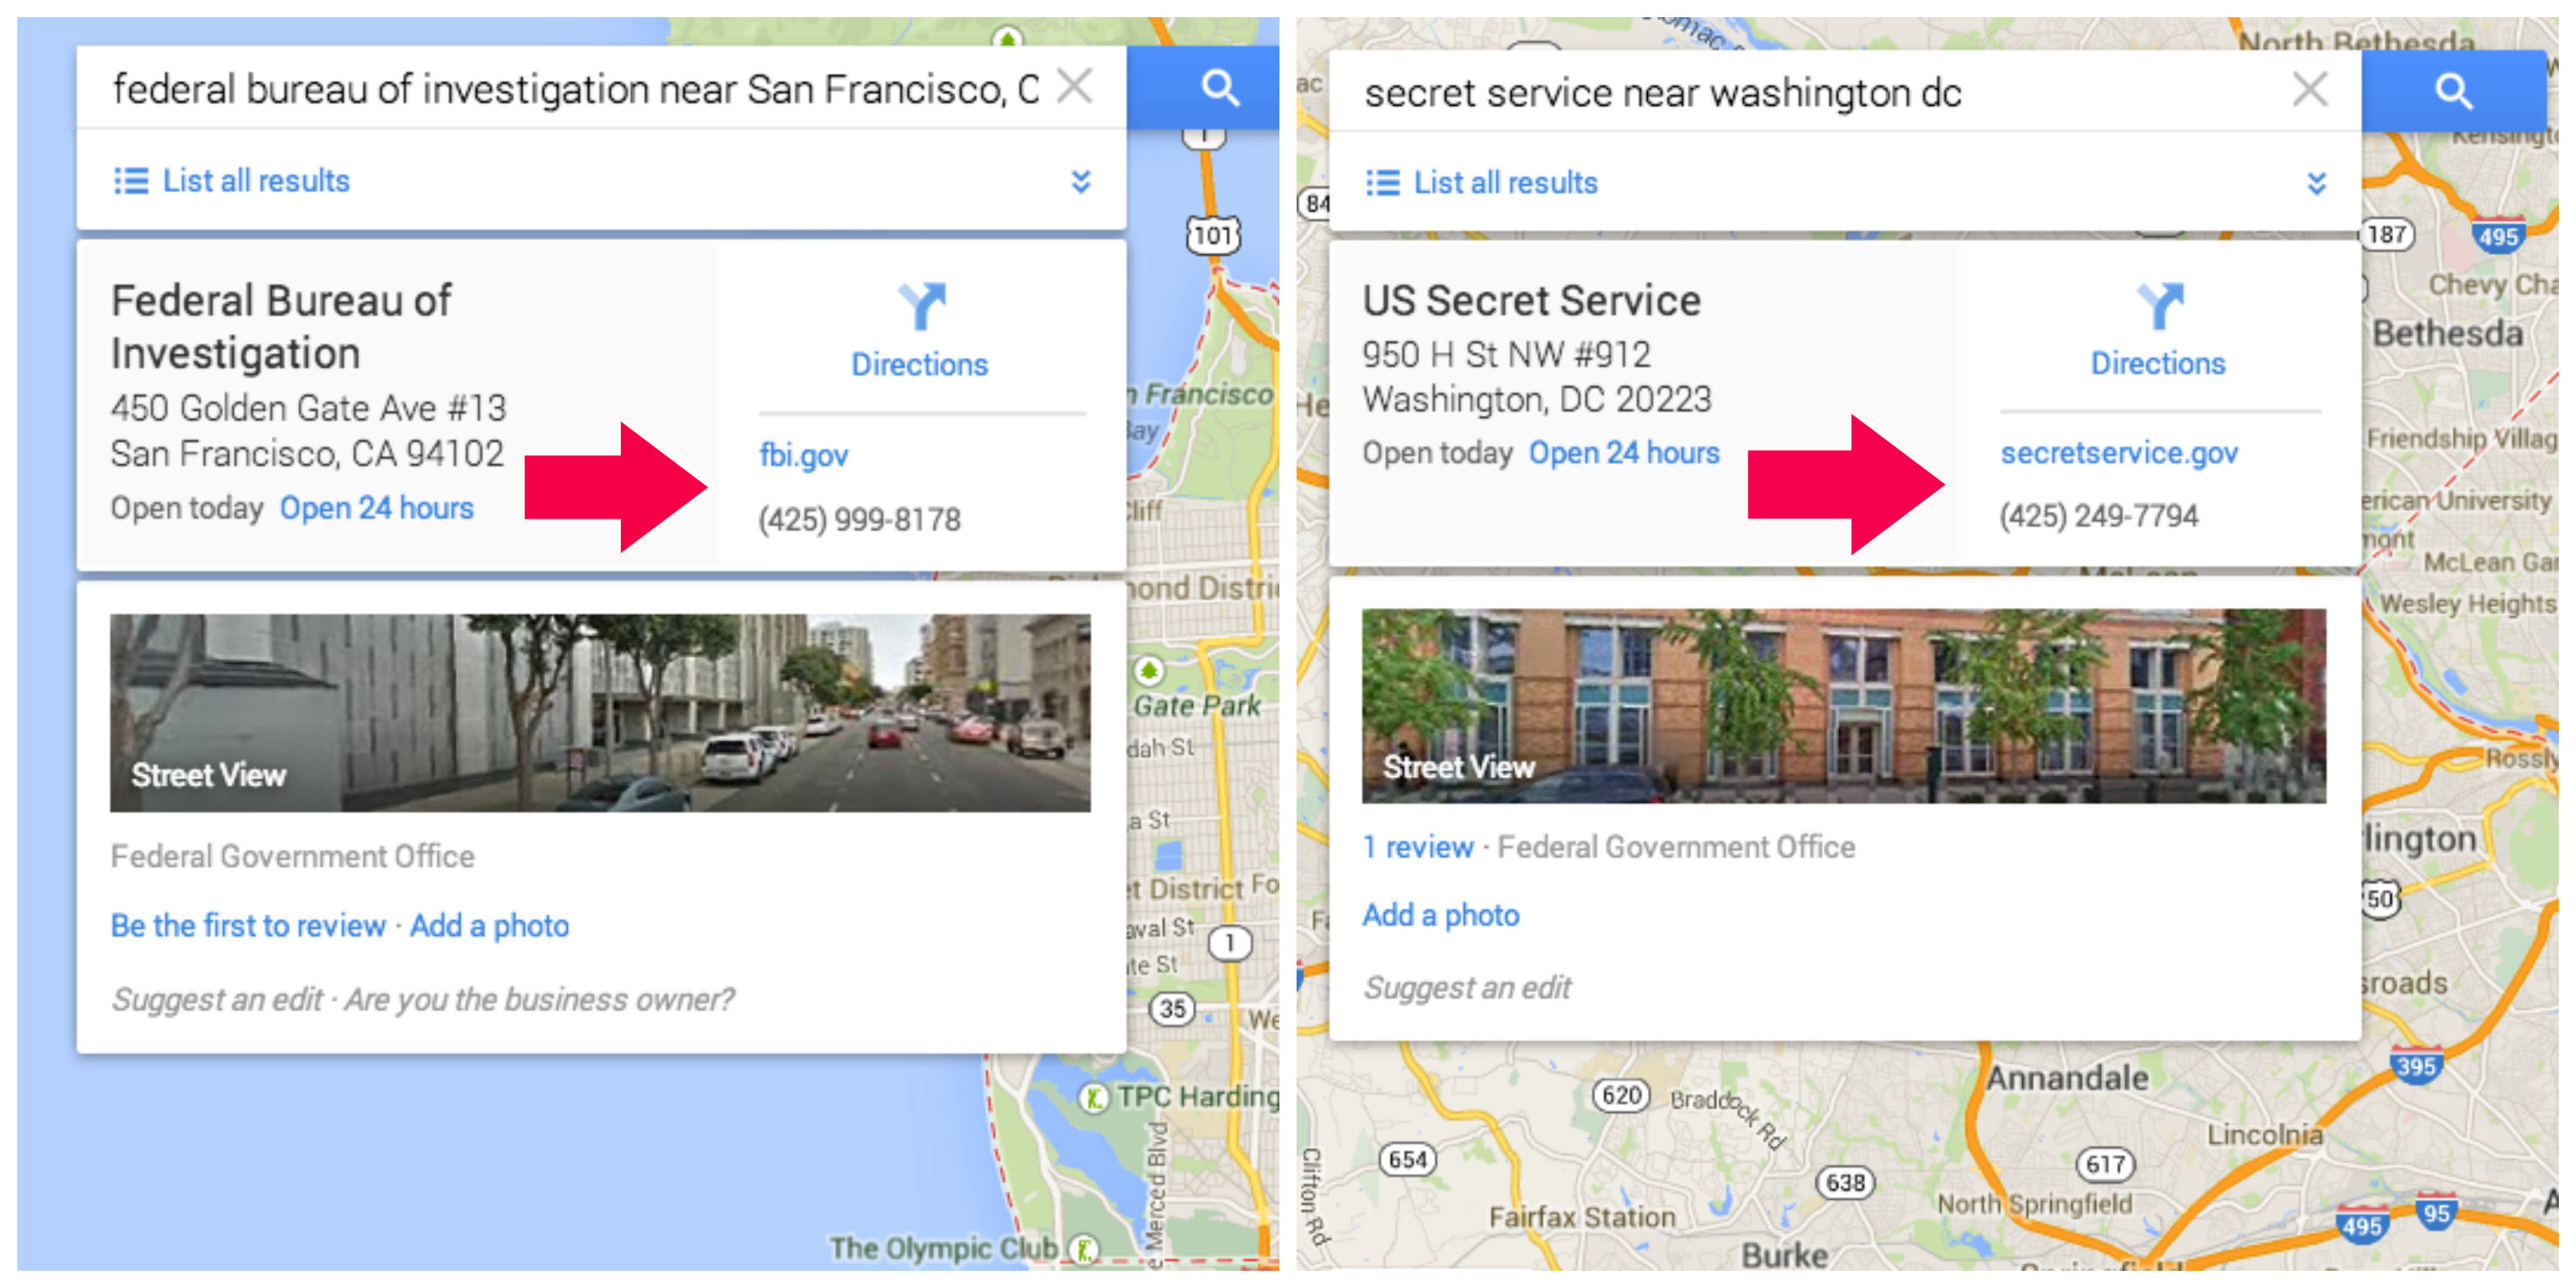 Para divulgar novas ferramentas do Google Maps, Google lança game